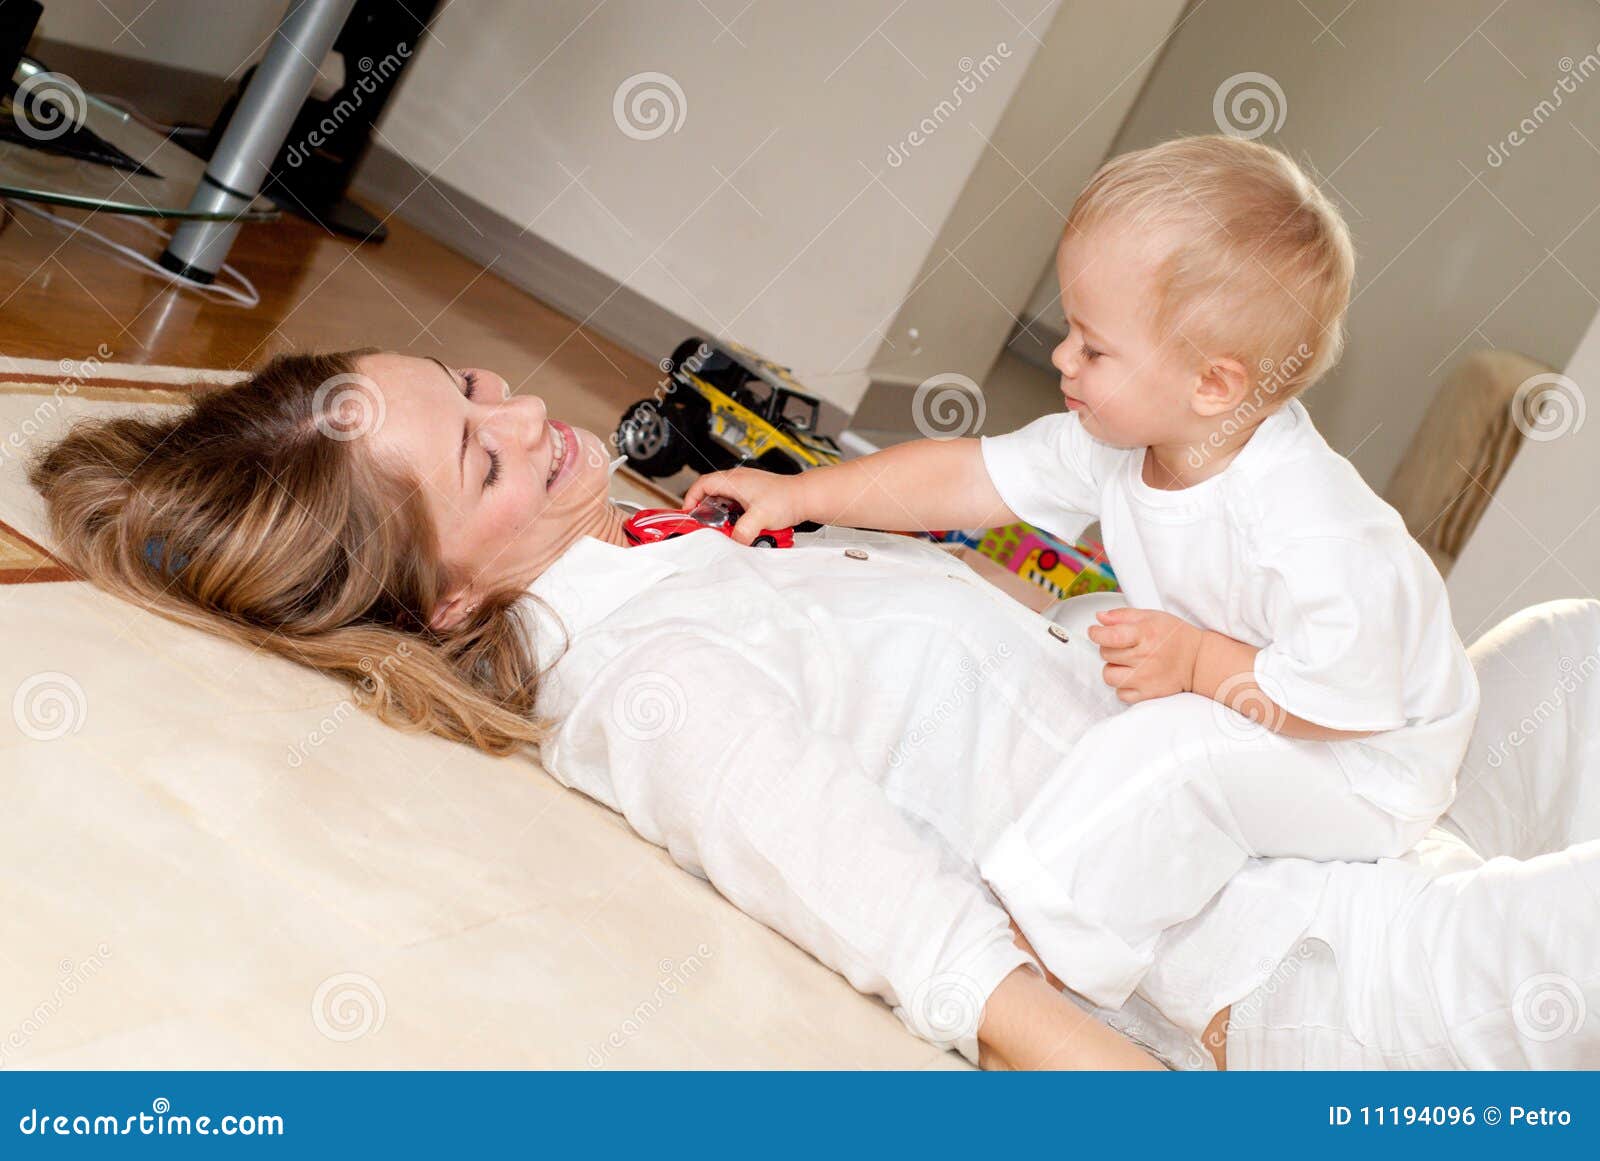 Она лежит как маме. Сын лежит на маме. Мамочка лежит с сыном. Ленивые игры с мамой. Мама лежит ребенок играет.